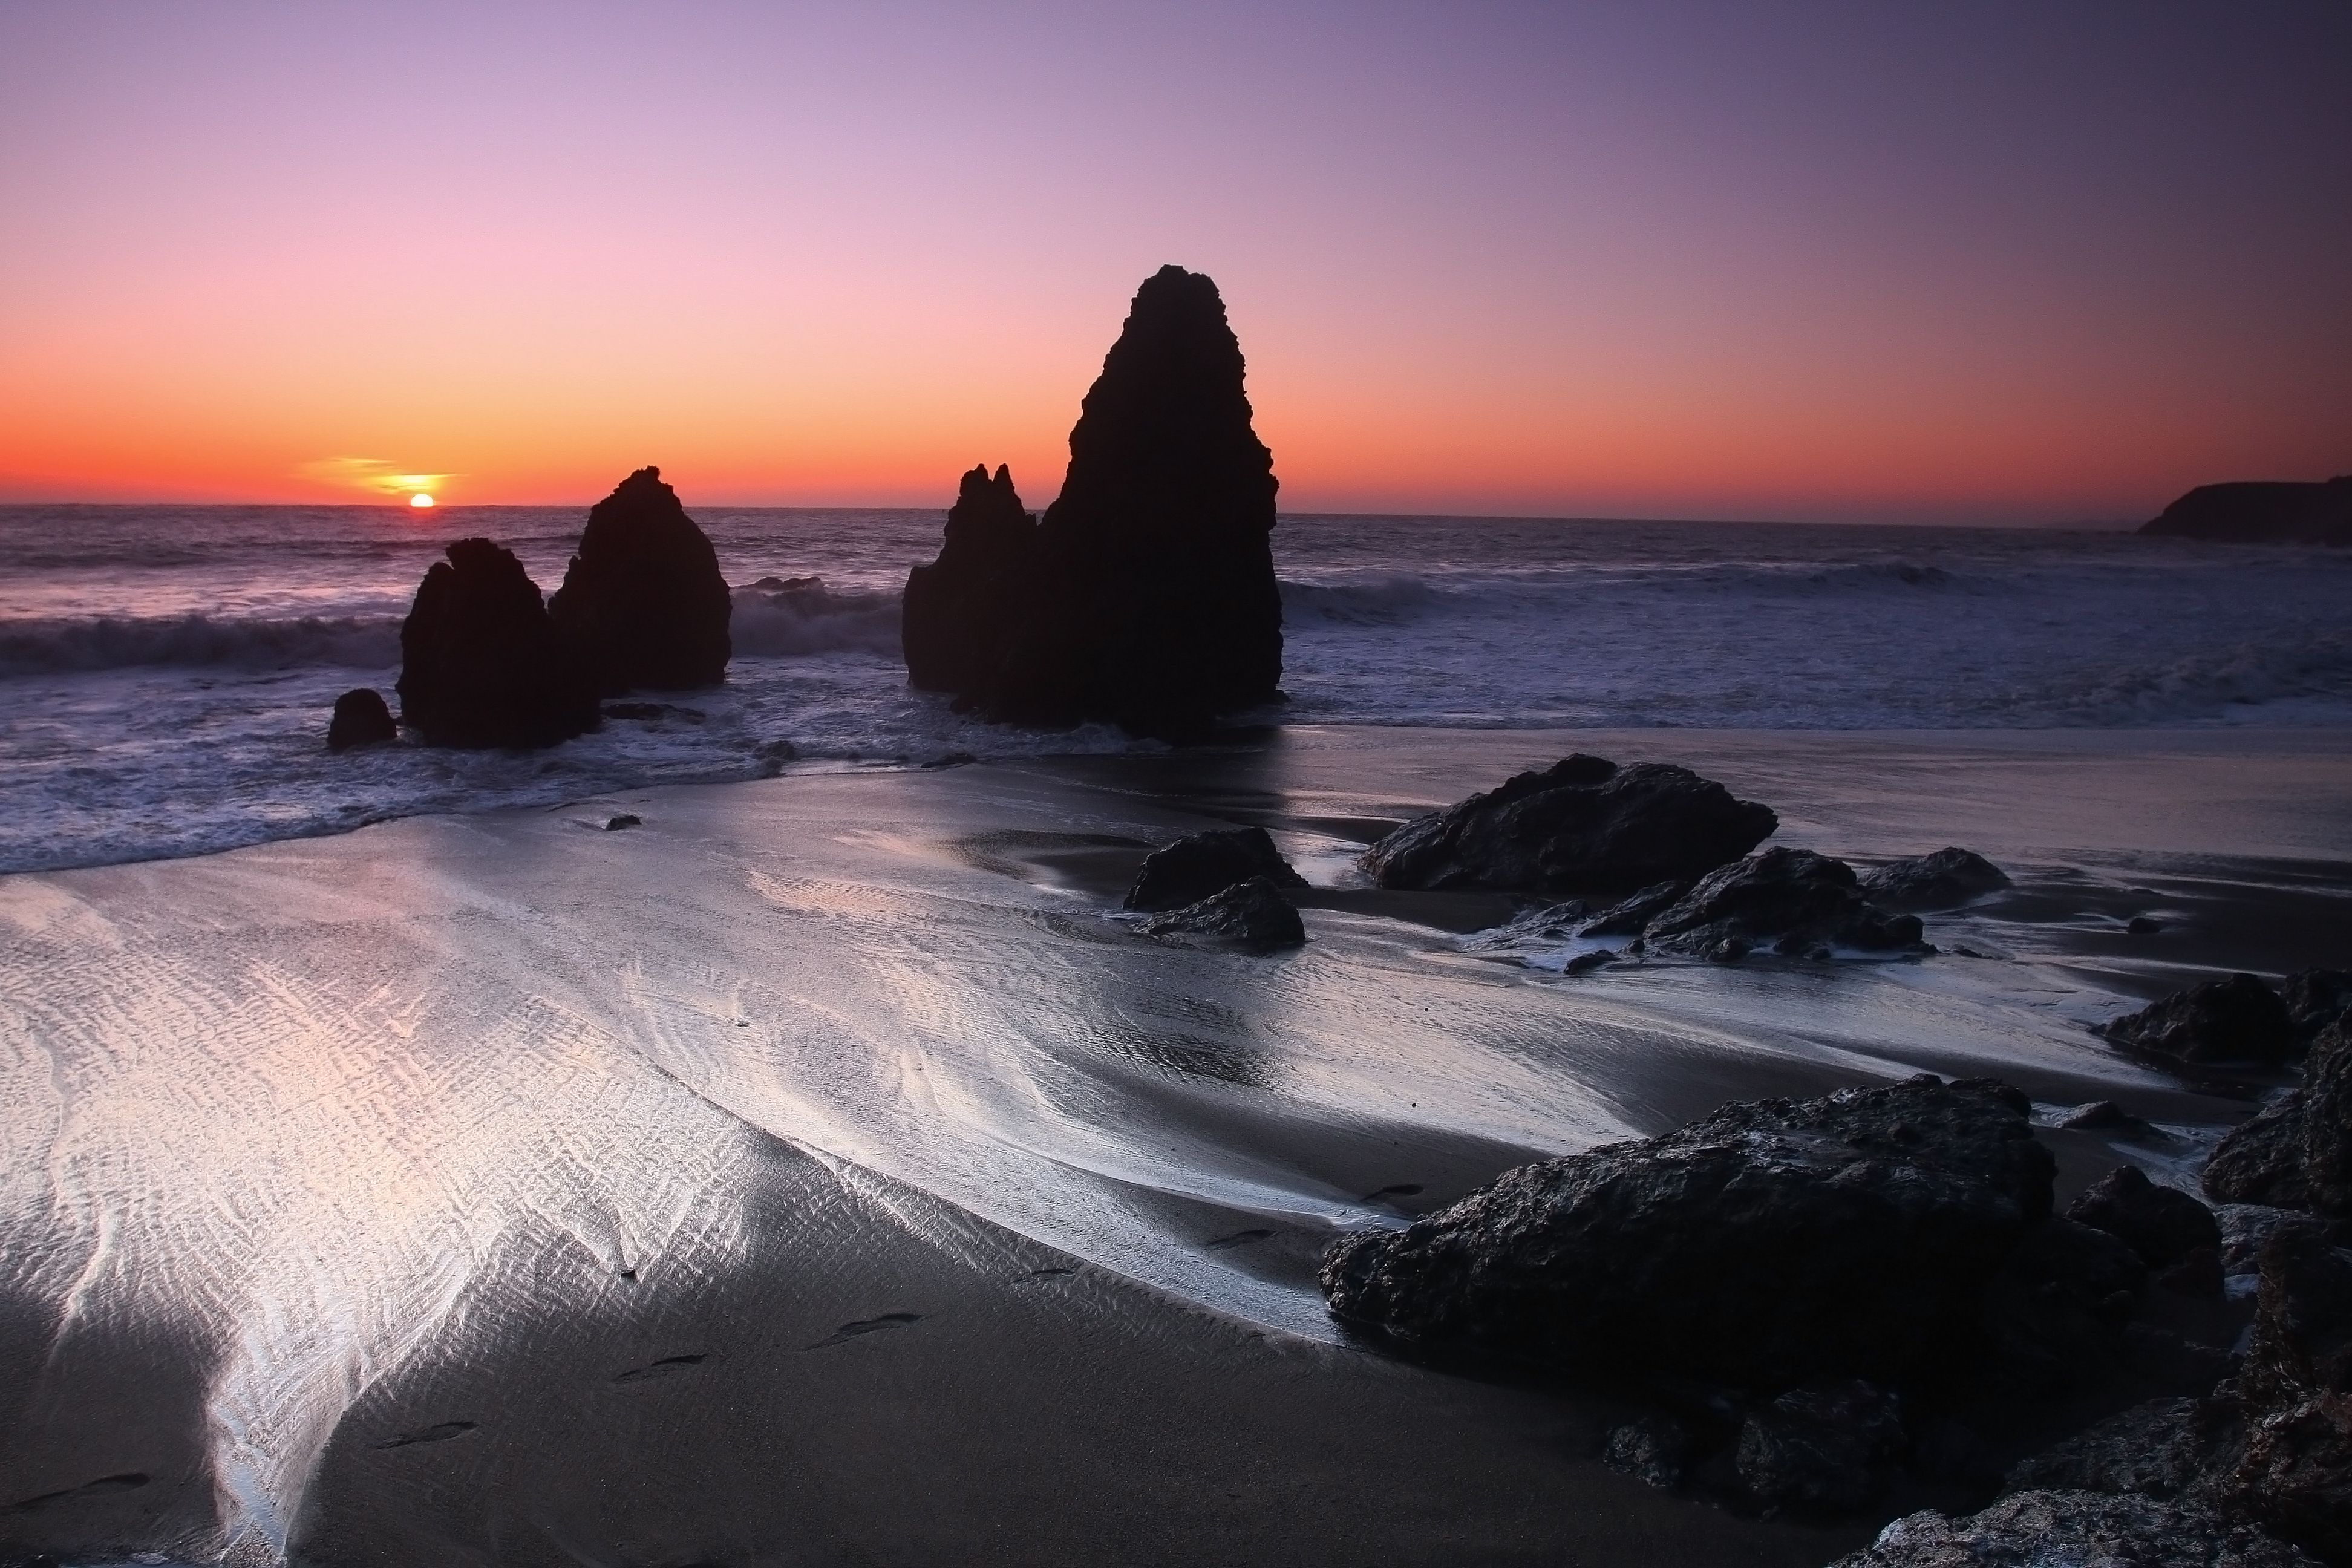  Sonnenuntergang Hintergrundbild 3888x2592. Wallpaper der Woche: Strandstimmung im Sonnenuntergang [Download]